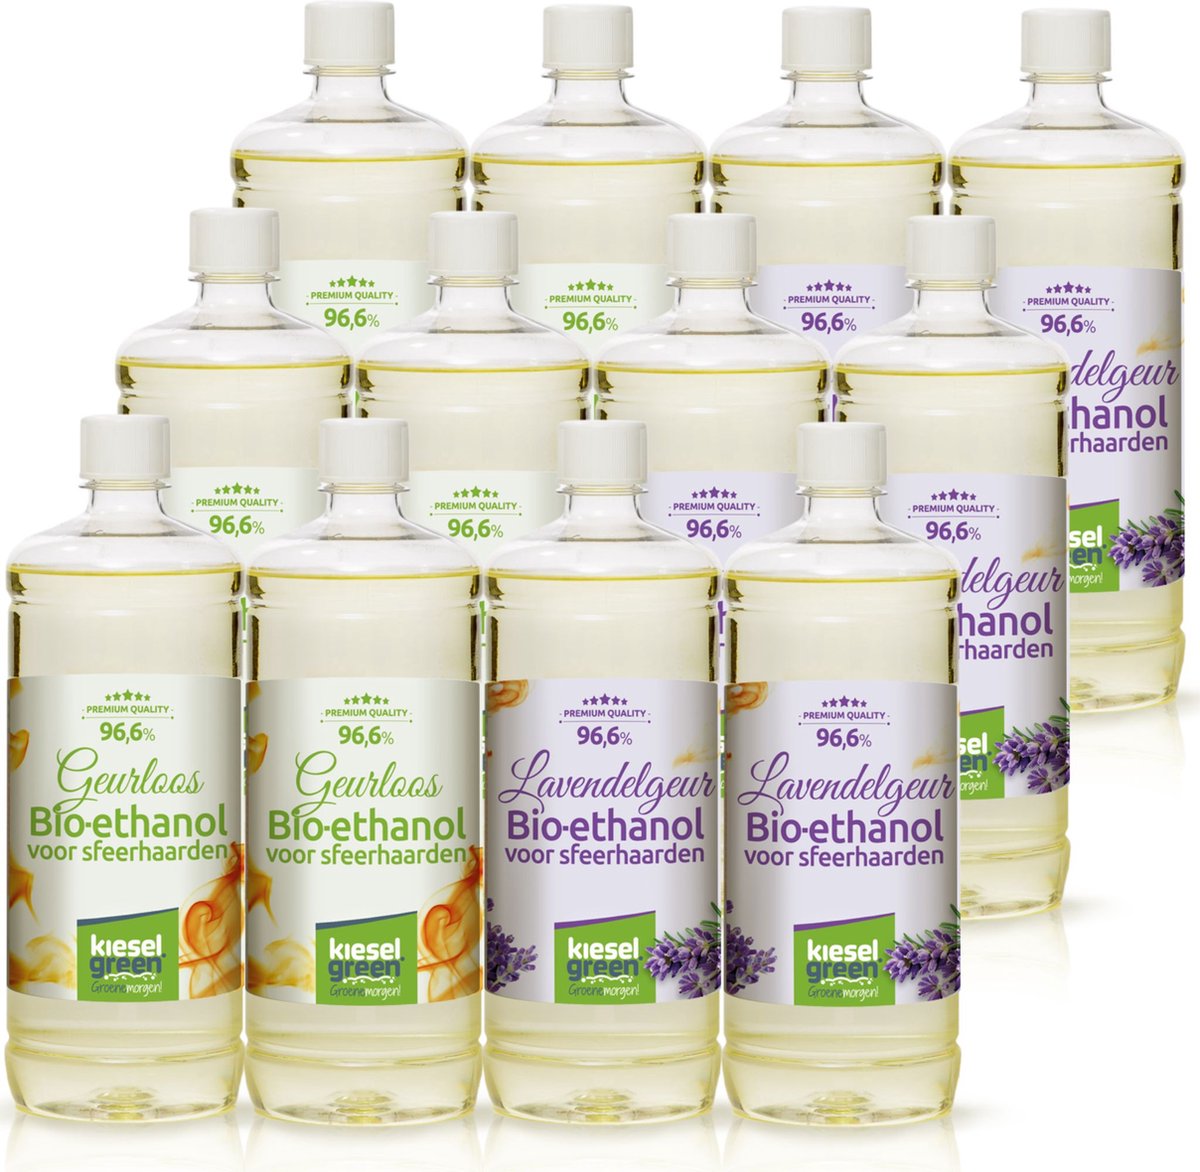 KieselGreen 12 Liter Bio-Ethanol 6x Lavendel Aroma en 6x Geurloos - Bioethanol 96.6%, Veilig voor Sfeerhaarden en Tafelhaarden, Milieuvriendelijk - Premium Kwaliteit Ethanol voor Binnen en Buiten